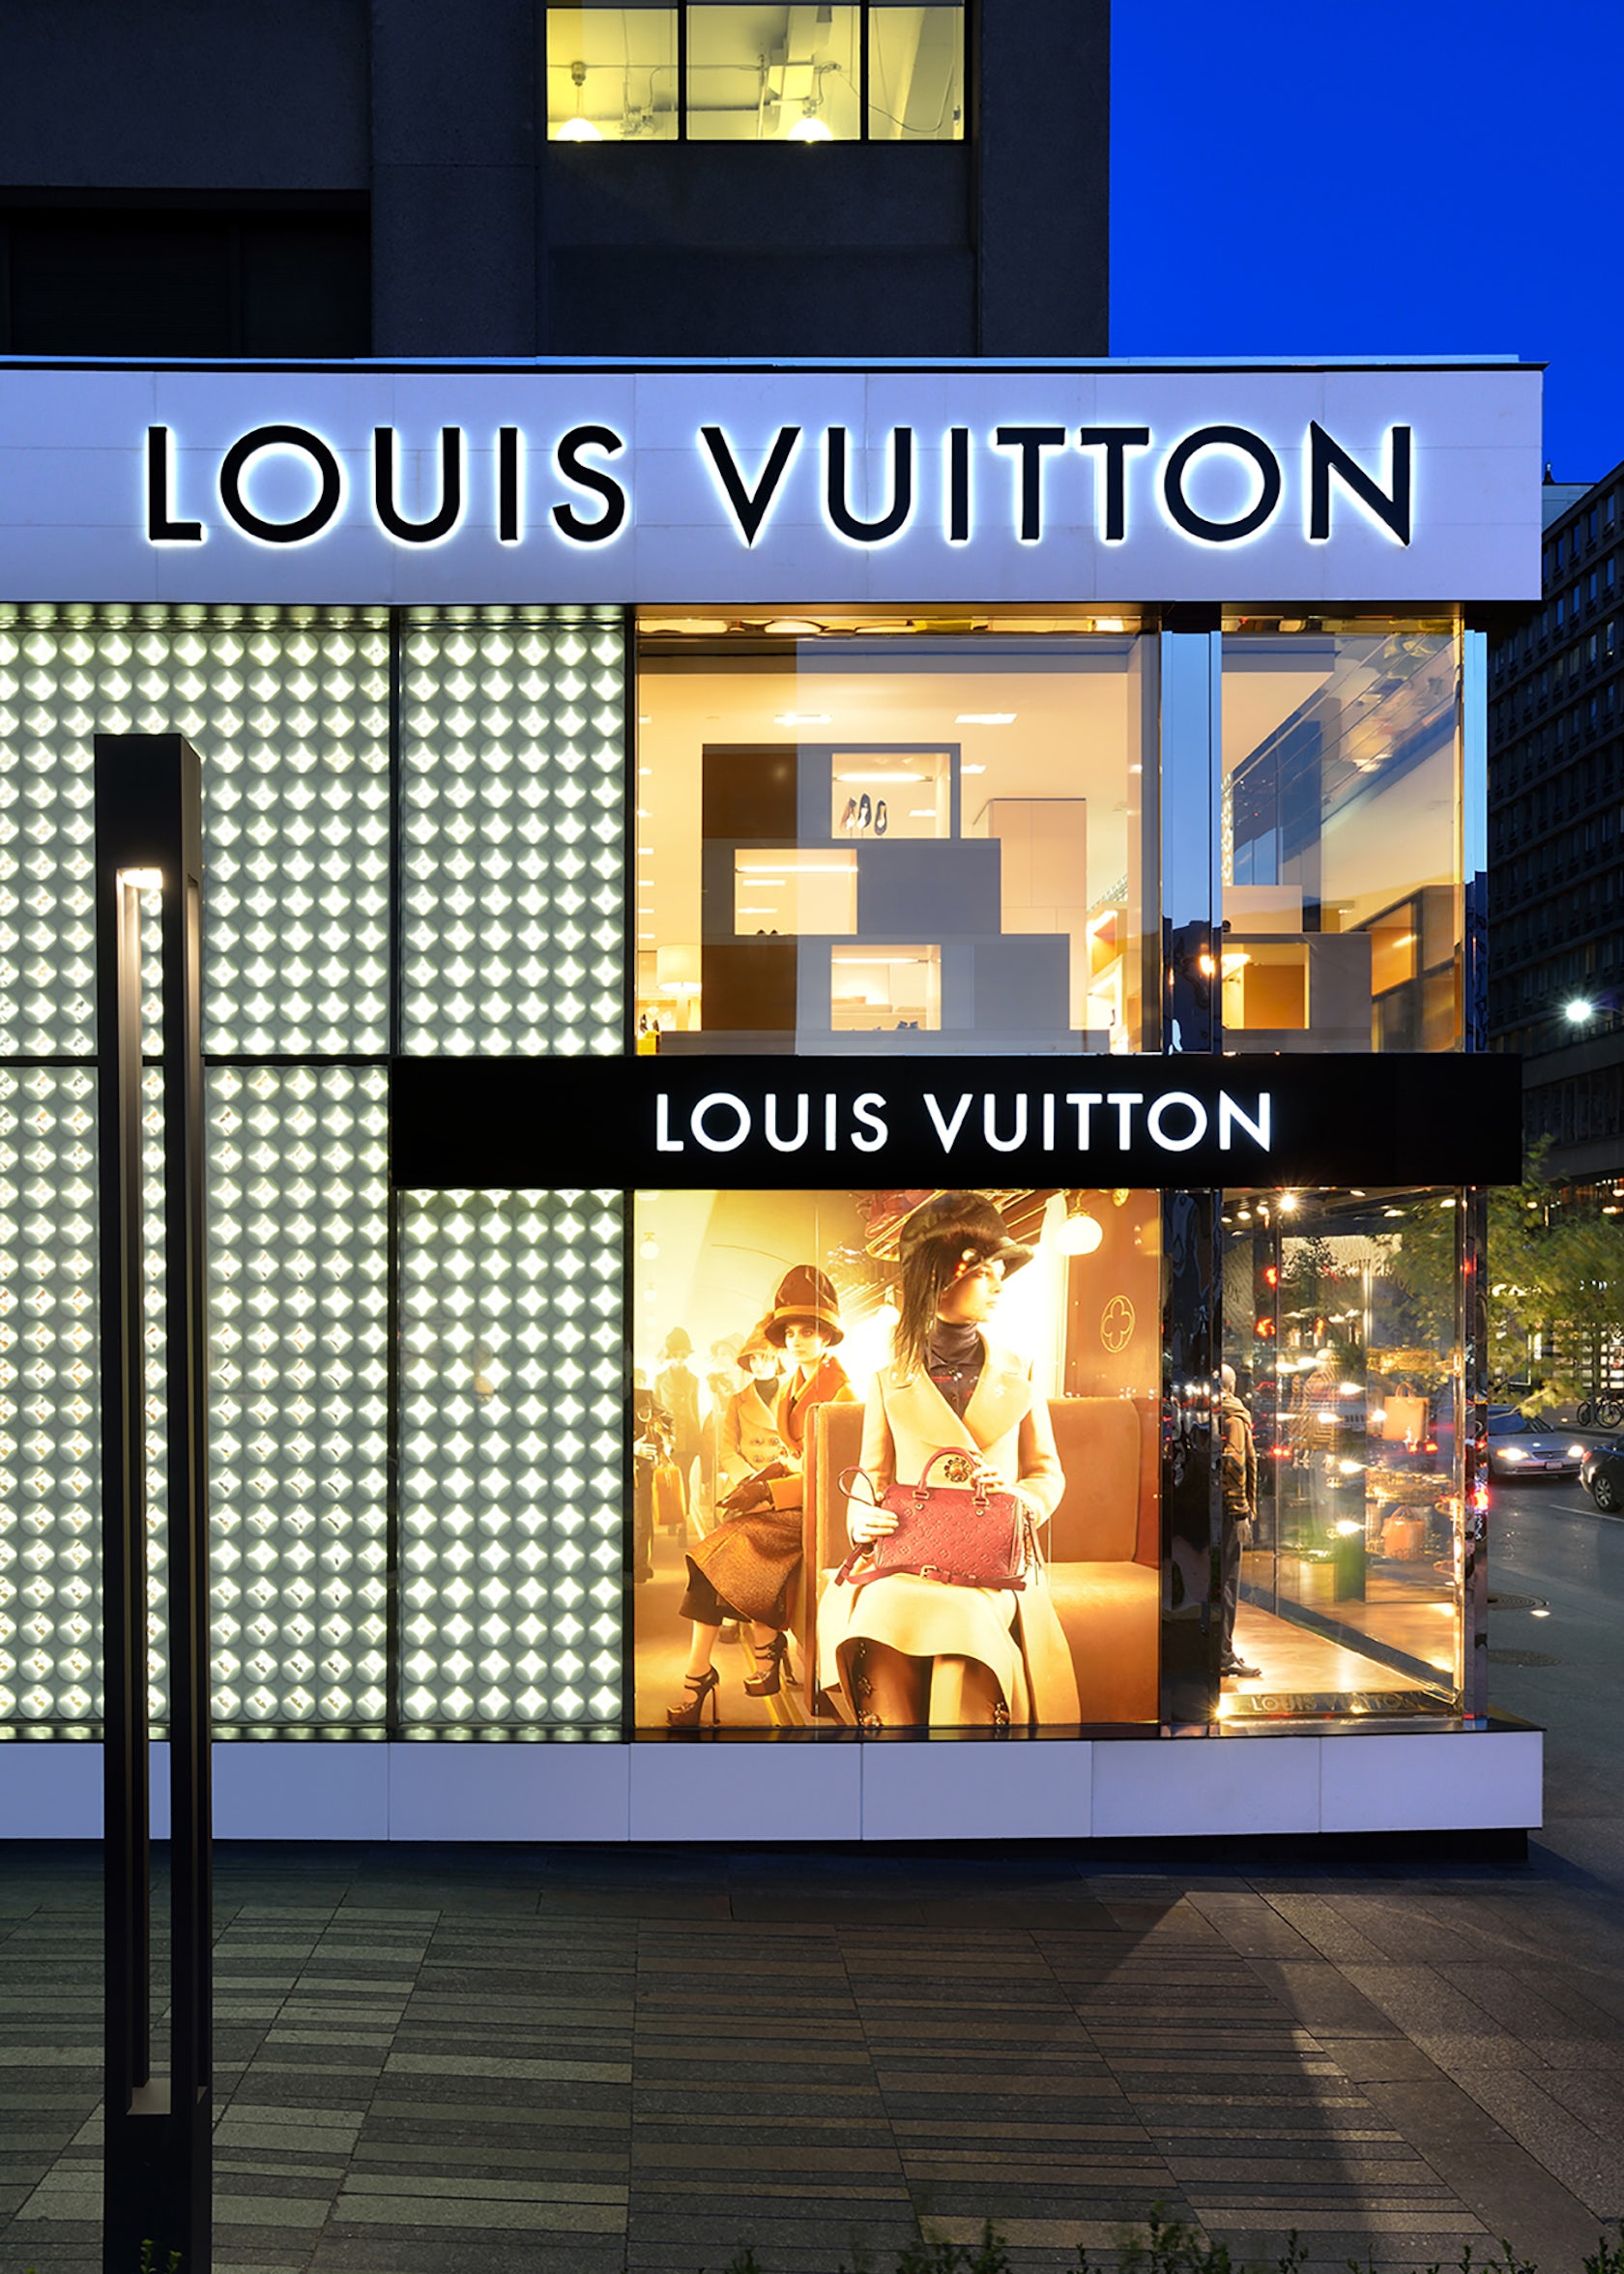 Louis Vuitton Toronto Bloor Street store, Canada